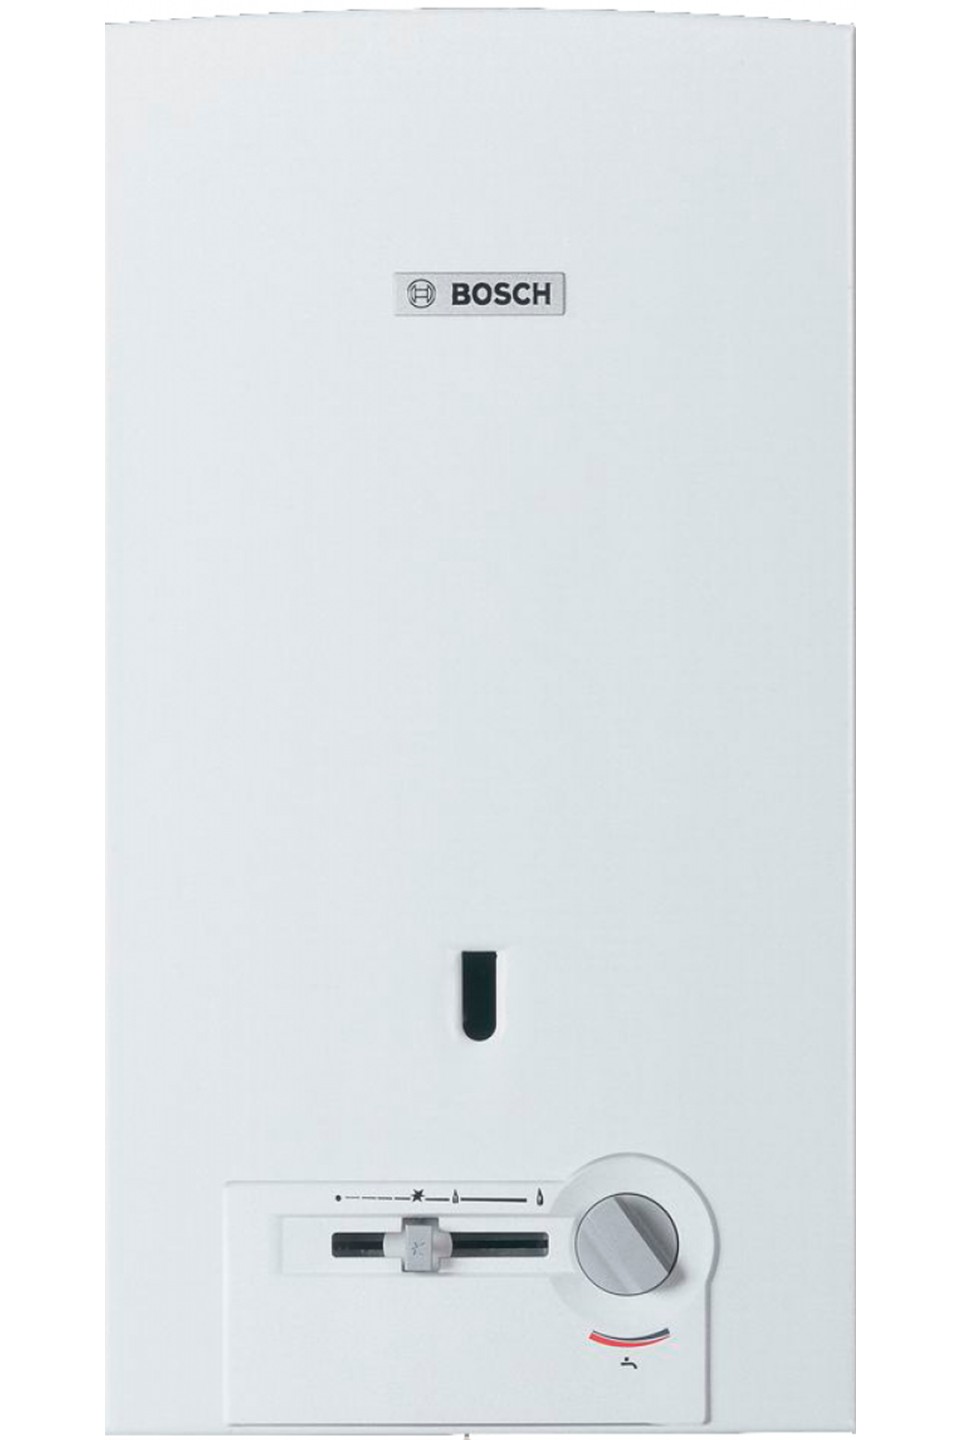 Отзывы газовая колонка с модуляцией пламени Bosch Therm 4000 O WR 13-2 P (7702331716) в Украине